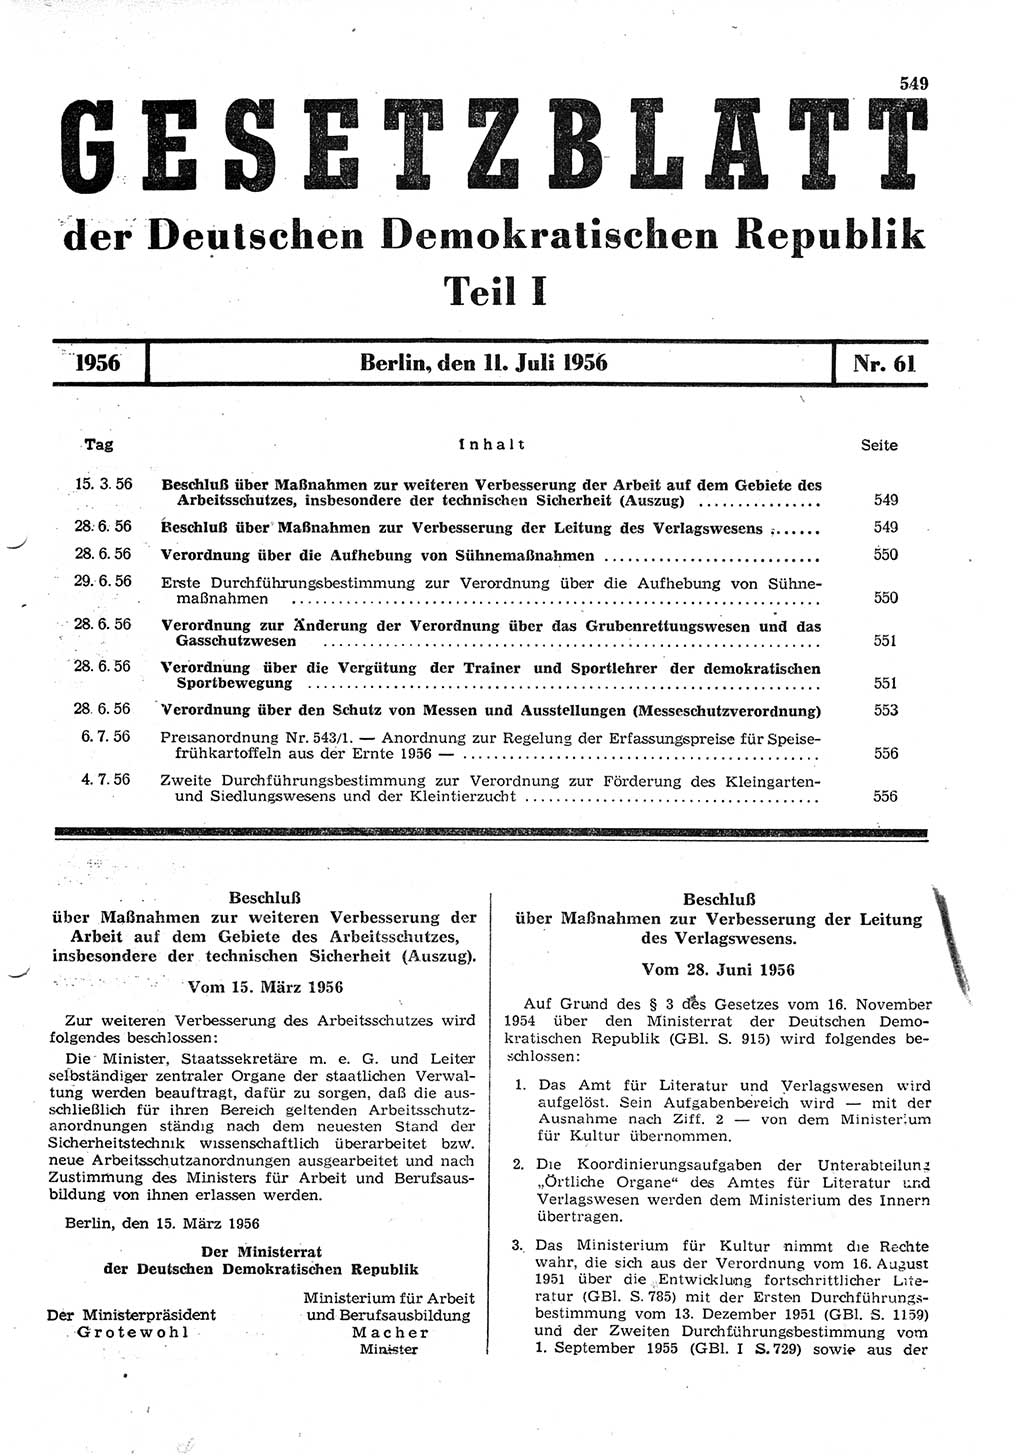 Gesetzblatt (GBl.) der Deutschen Demokratischen Republik (DDR) Teil Ⅰ 1956, Seite 549 (GBl. DDR Ⅰ 1956, S. 549)